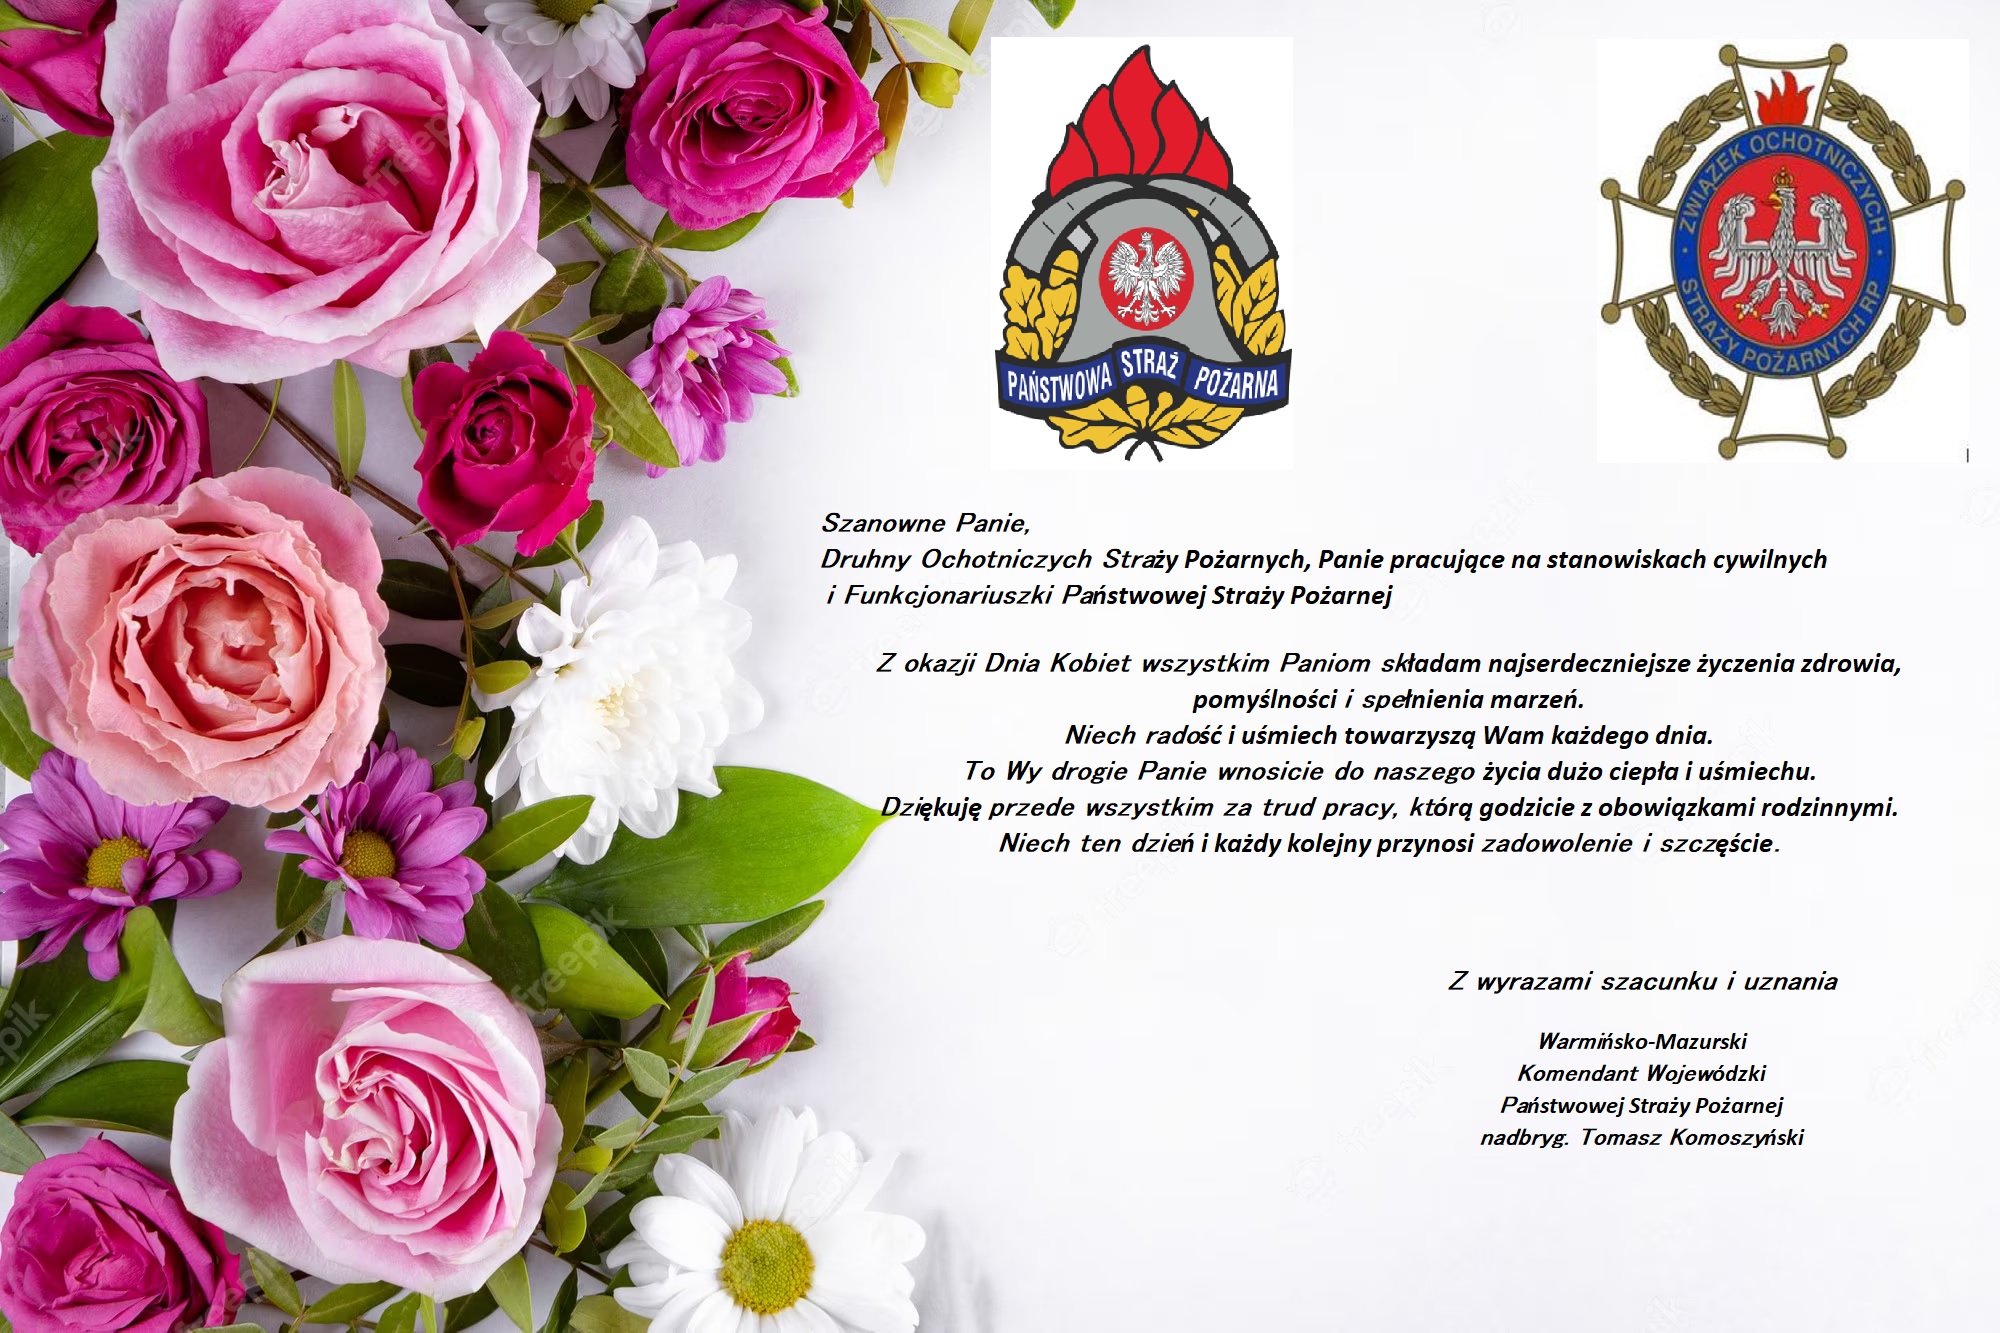 Życzenia Warmińsko-Mazurskiego Komendanta Wojewódzkiego PSP z okazji Dnia Kobiet